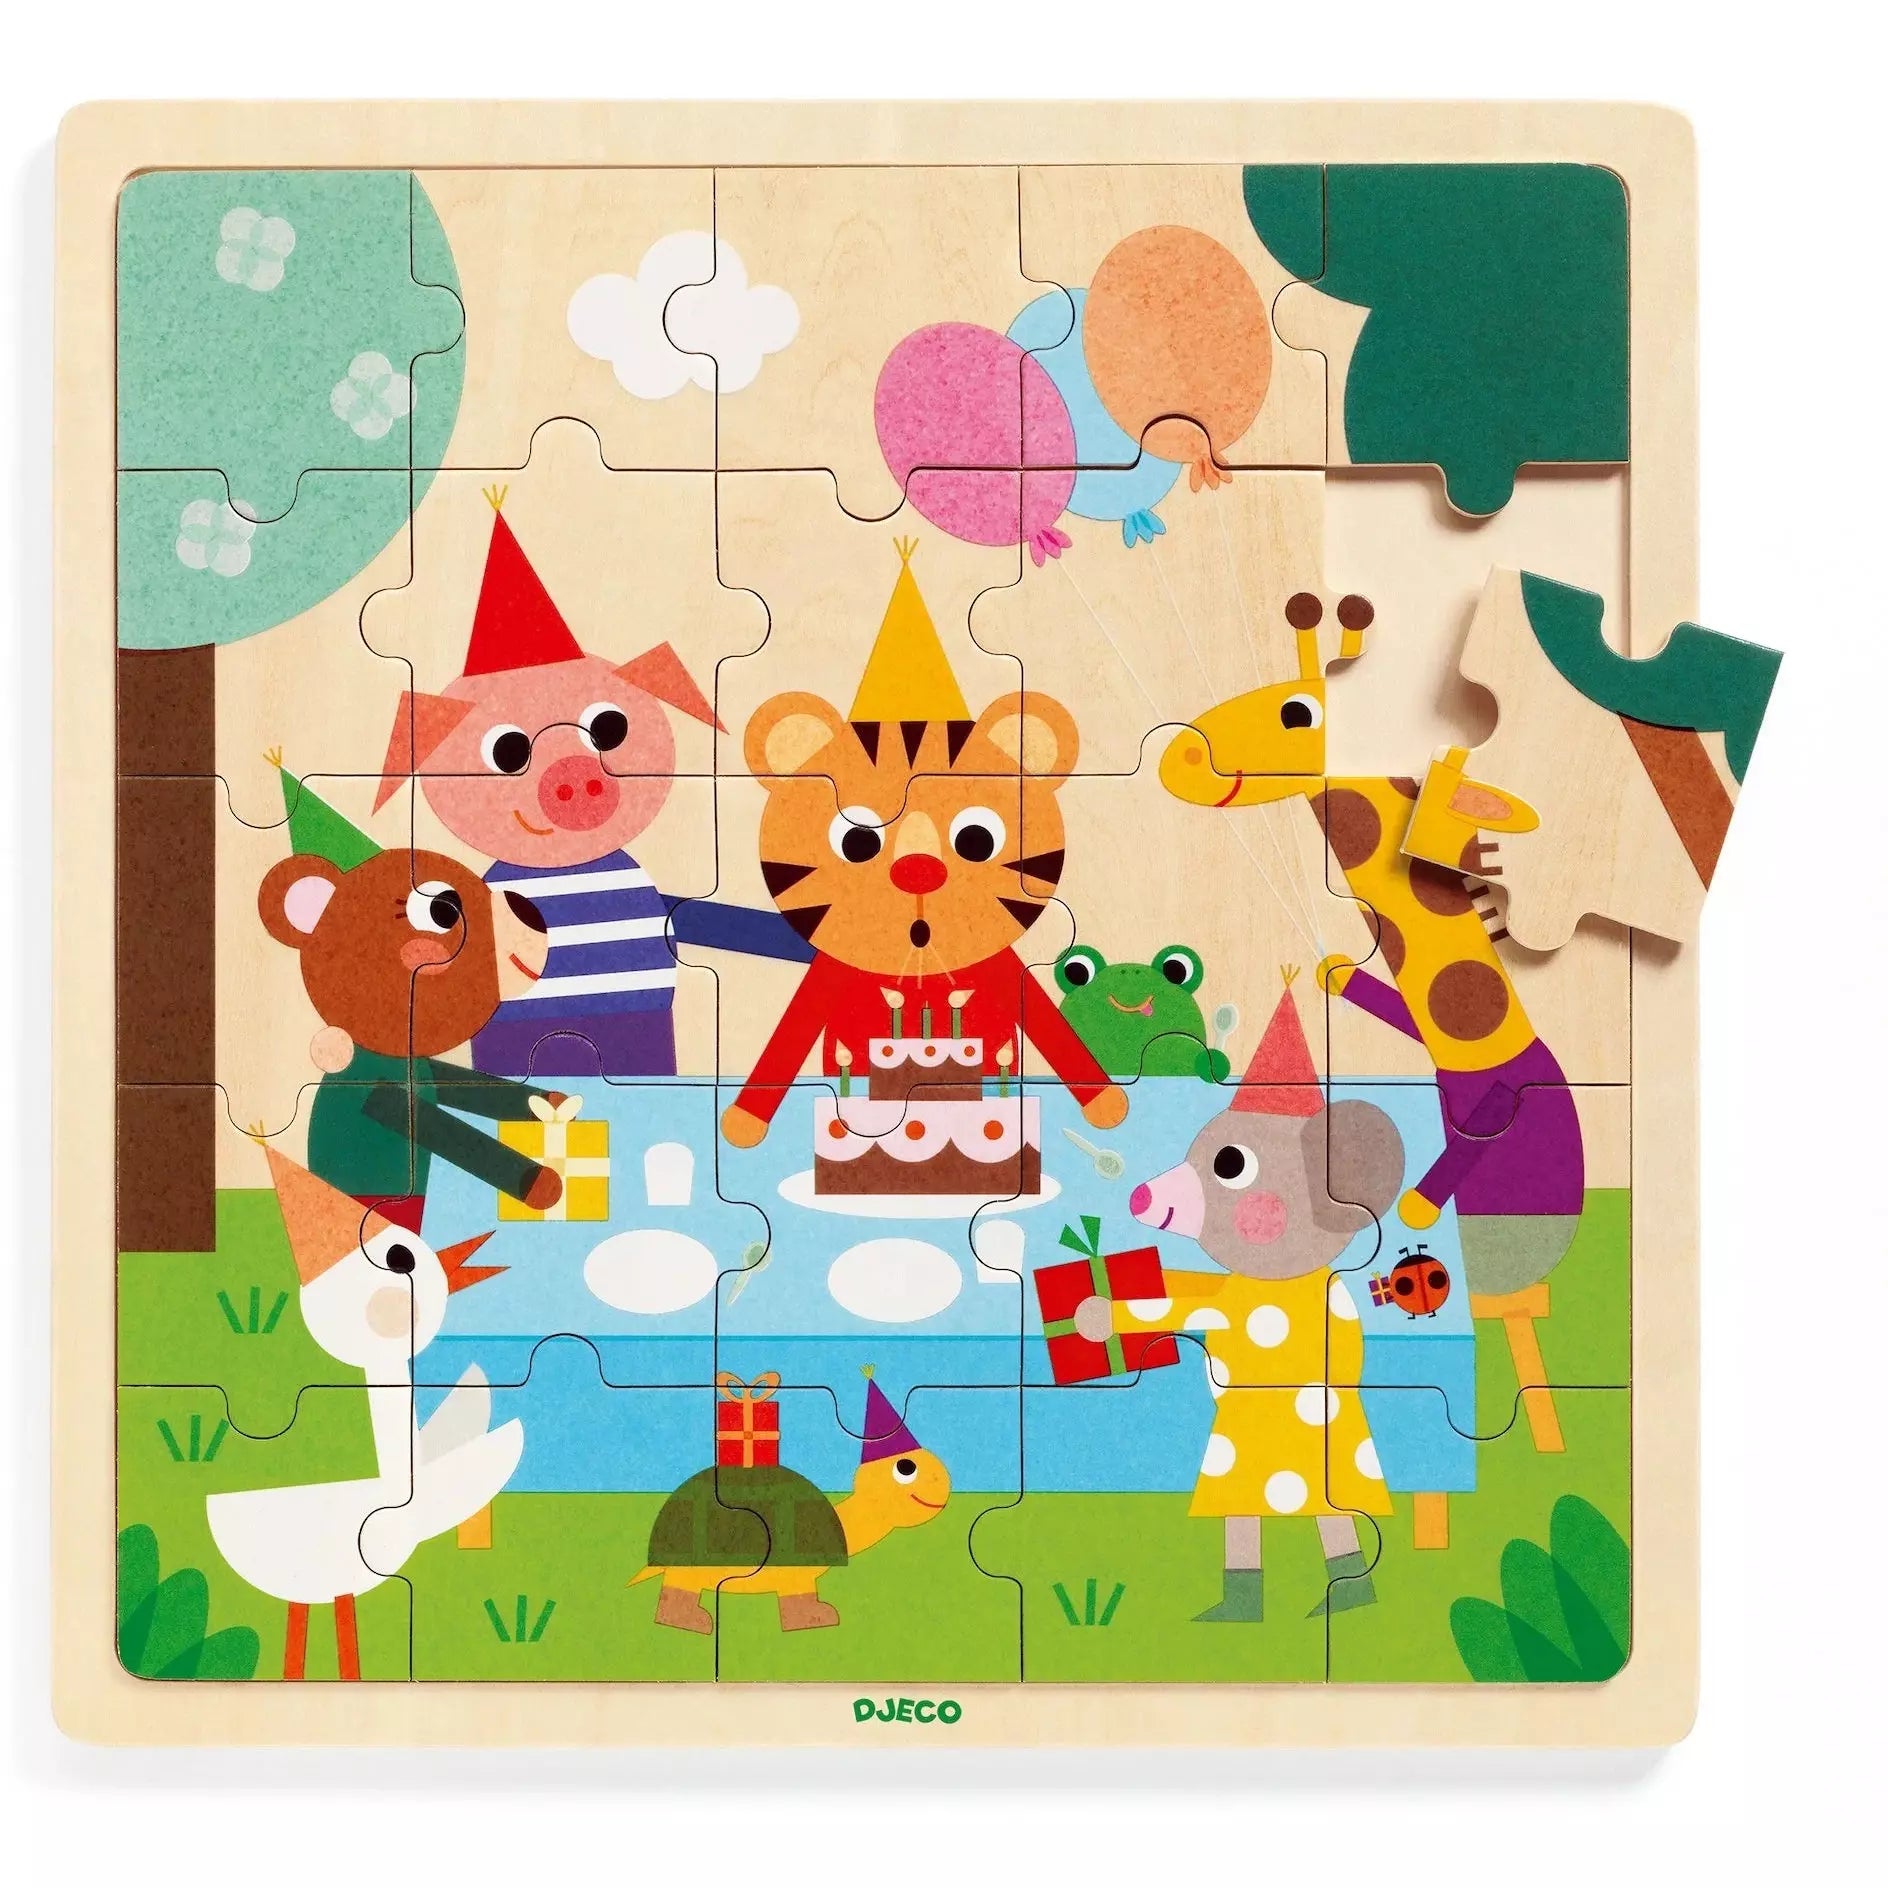 Djeco Wooden Puzzle -- Puzzlo Happy, 25 pieces